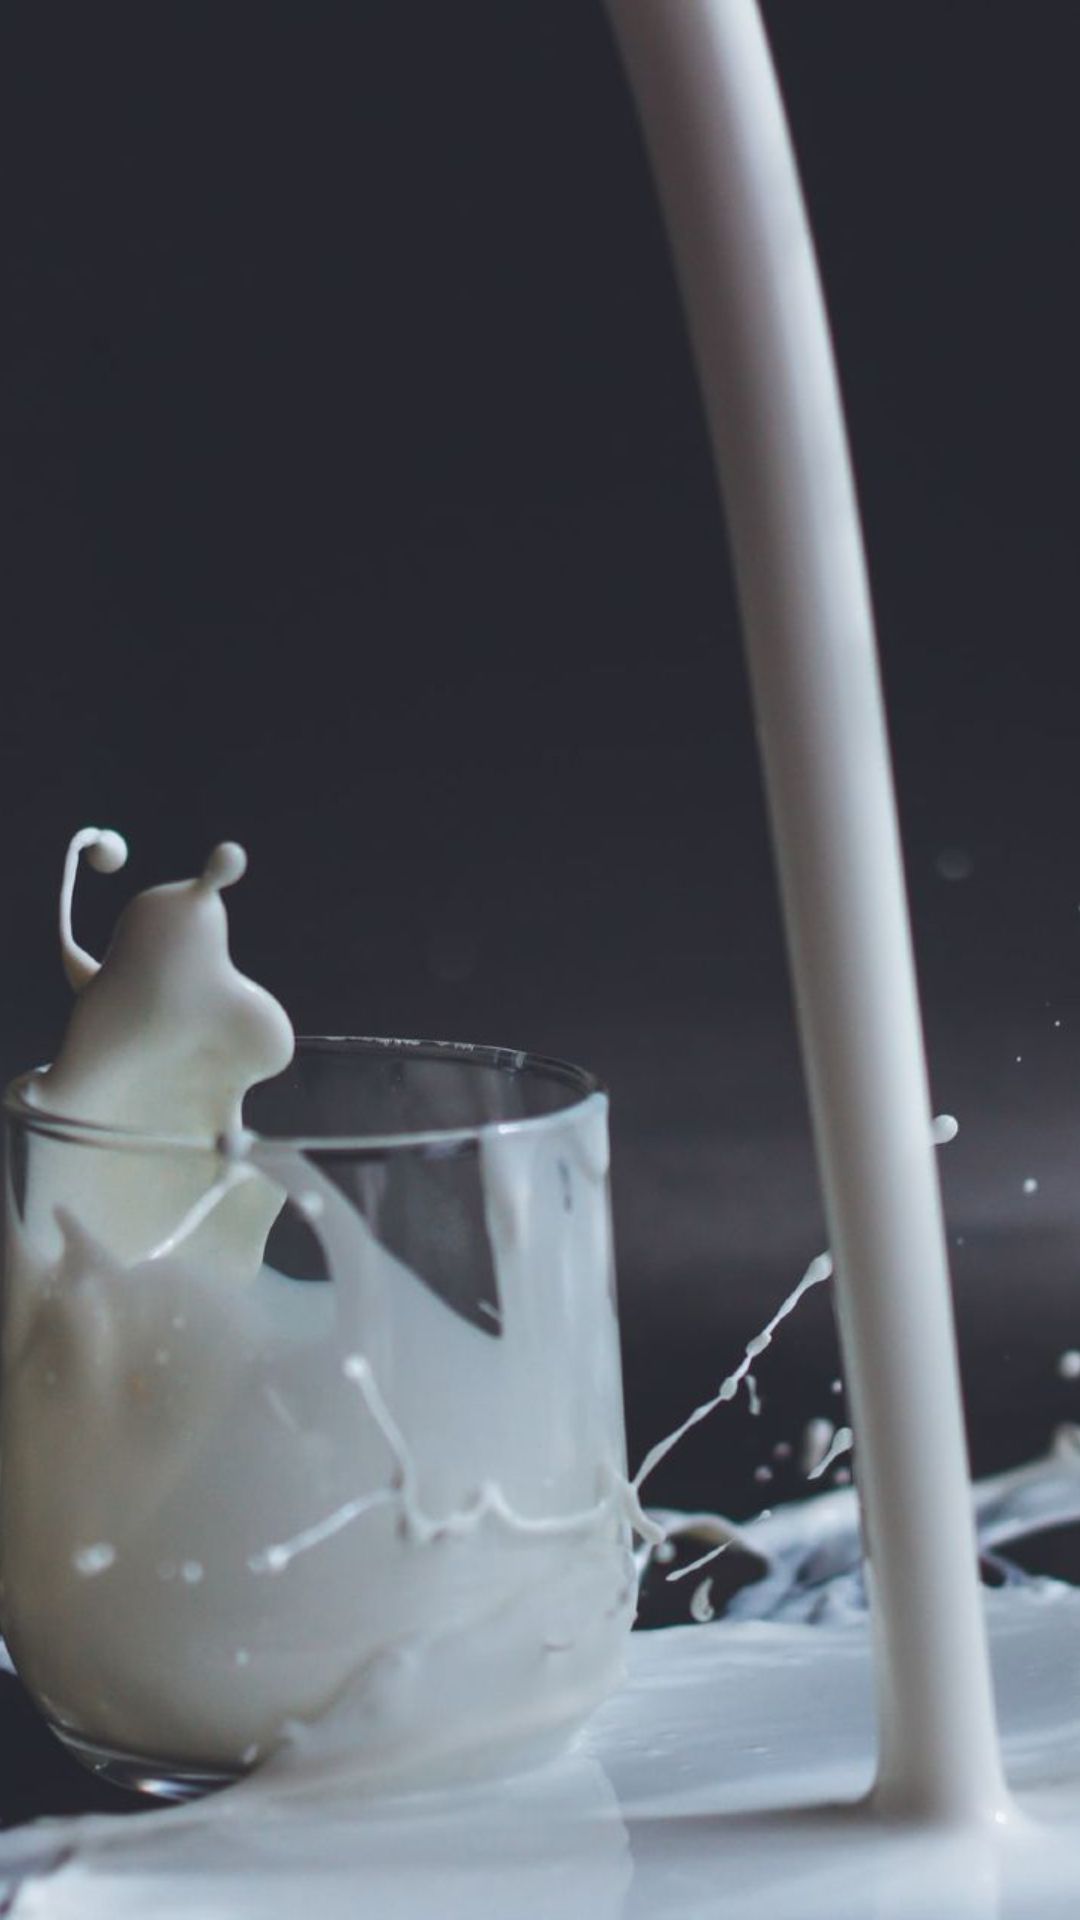 भारत में 7000 रुपए लीटर बिकता है यह दूध